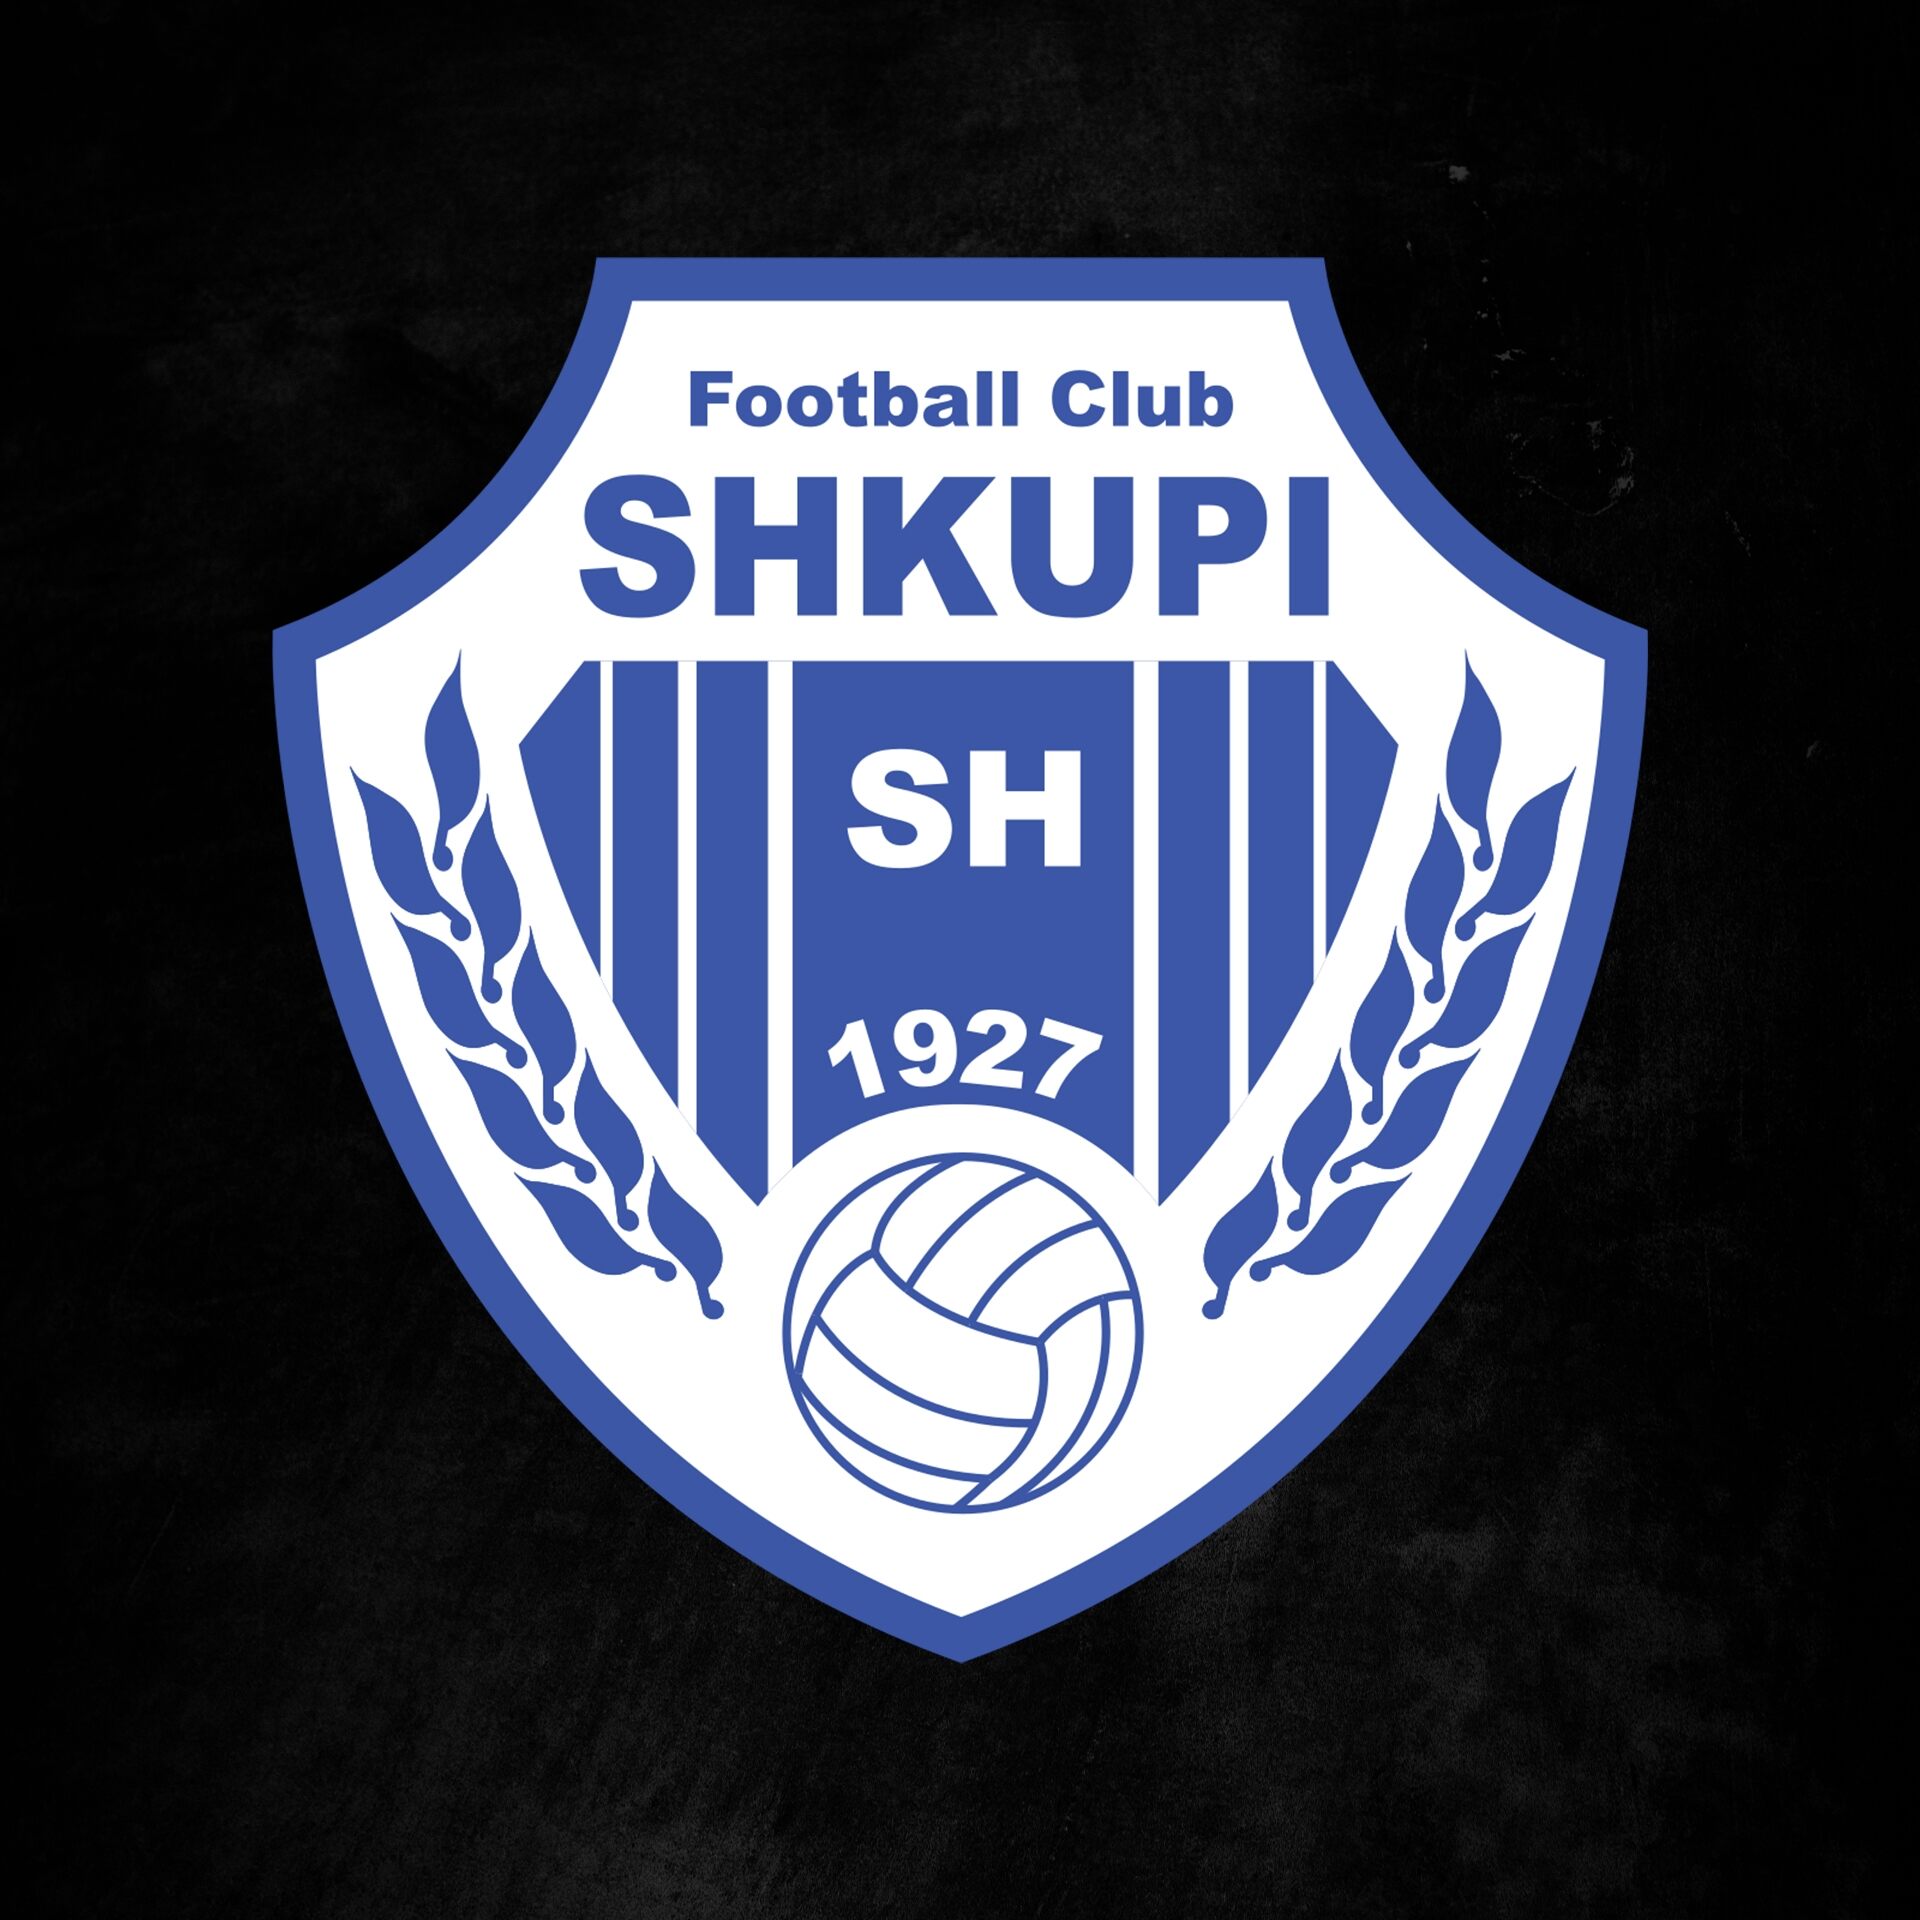 kf-shkupi-19-football-club-facts